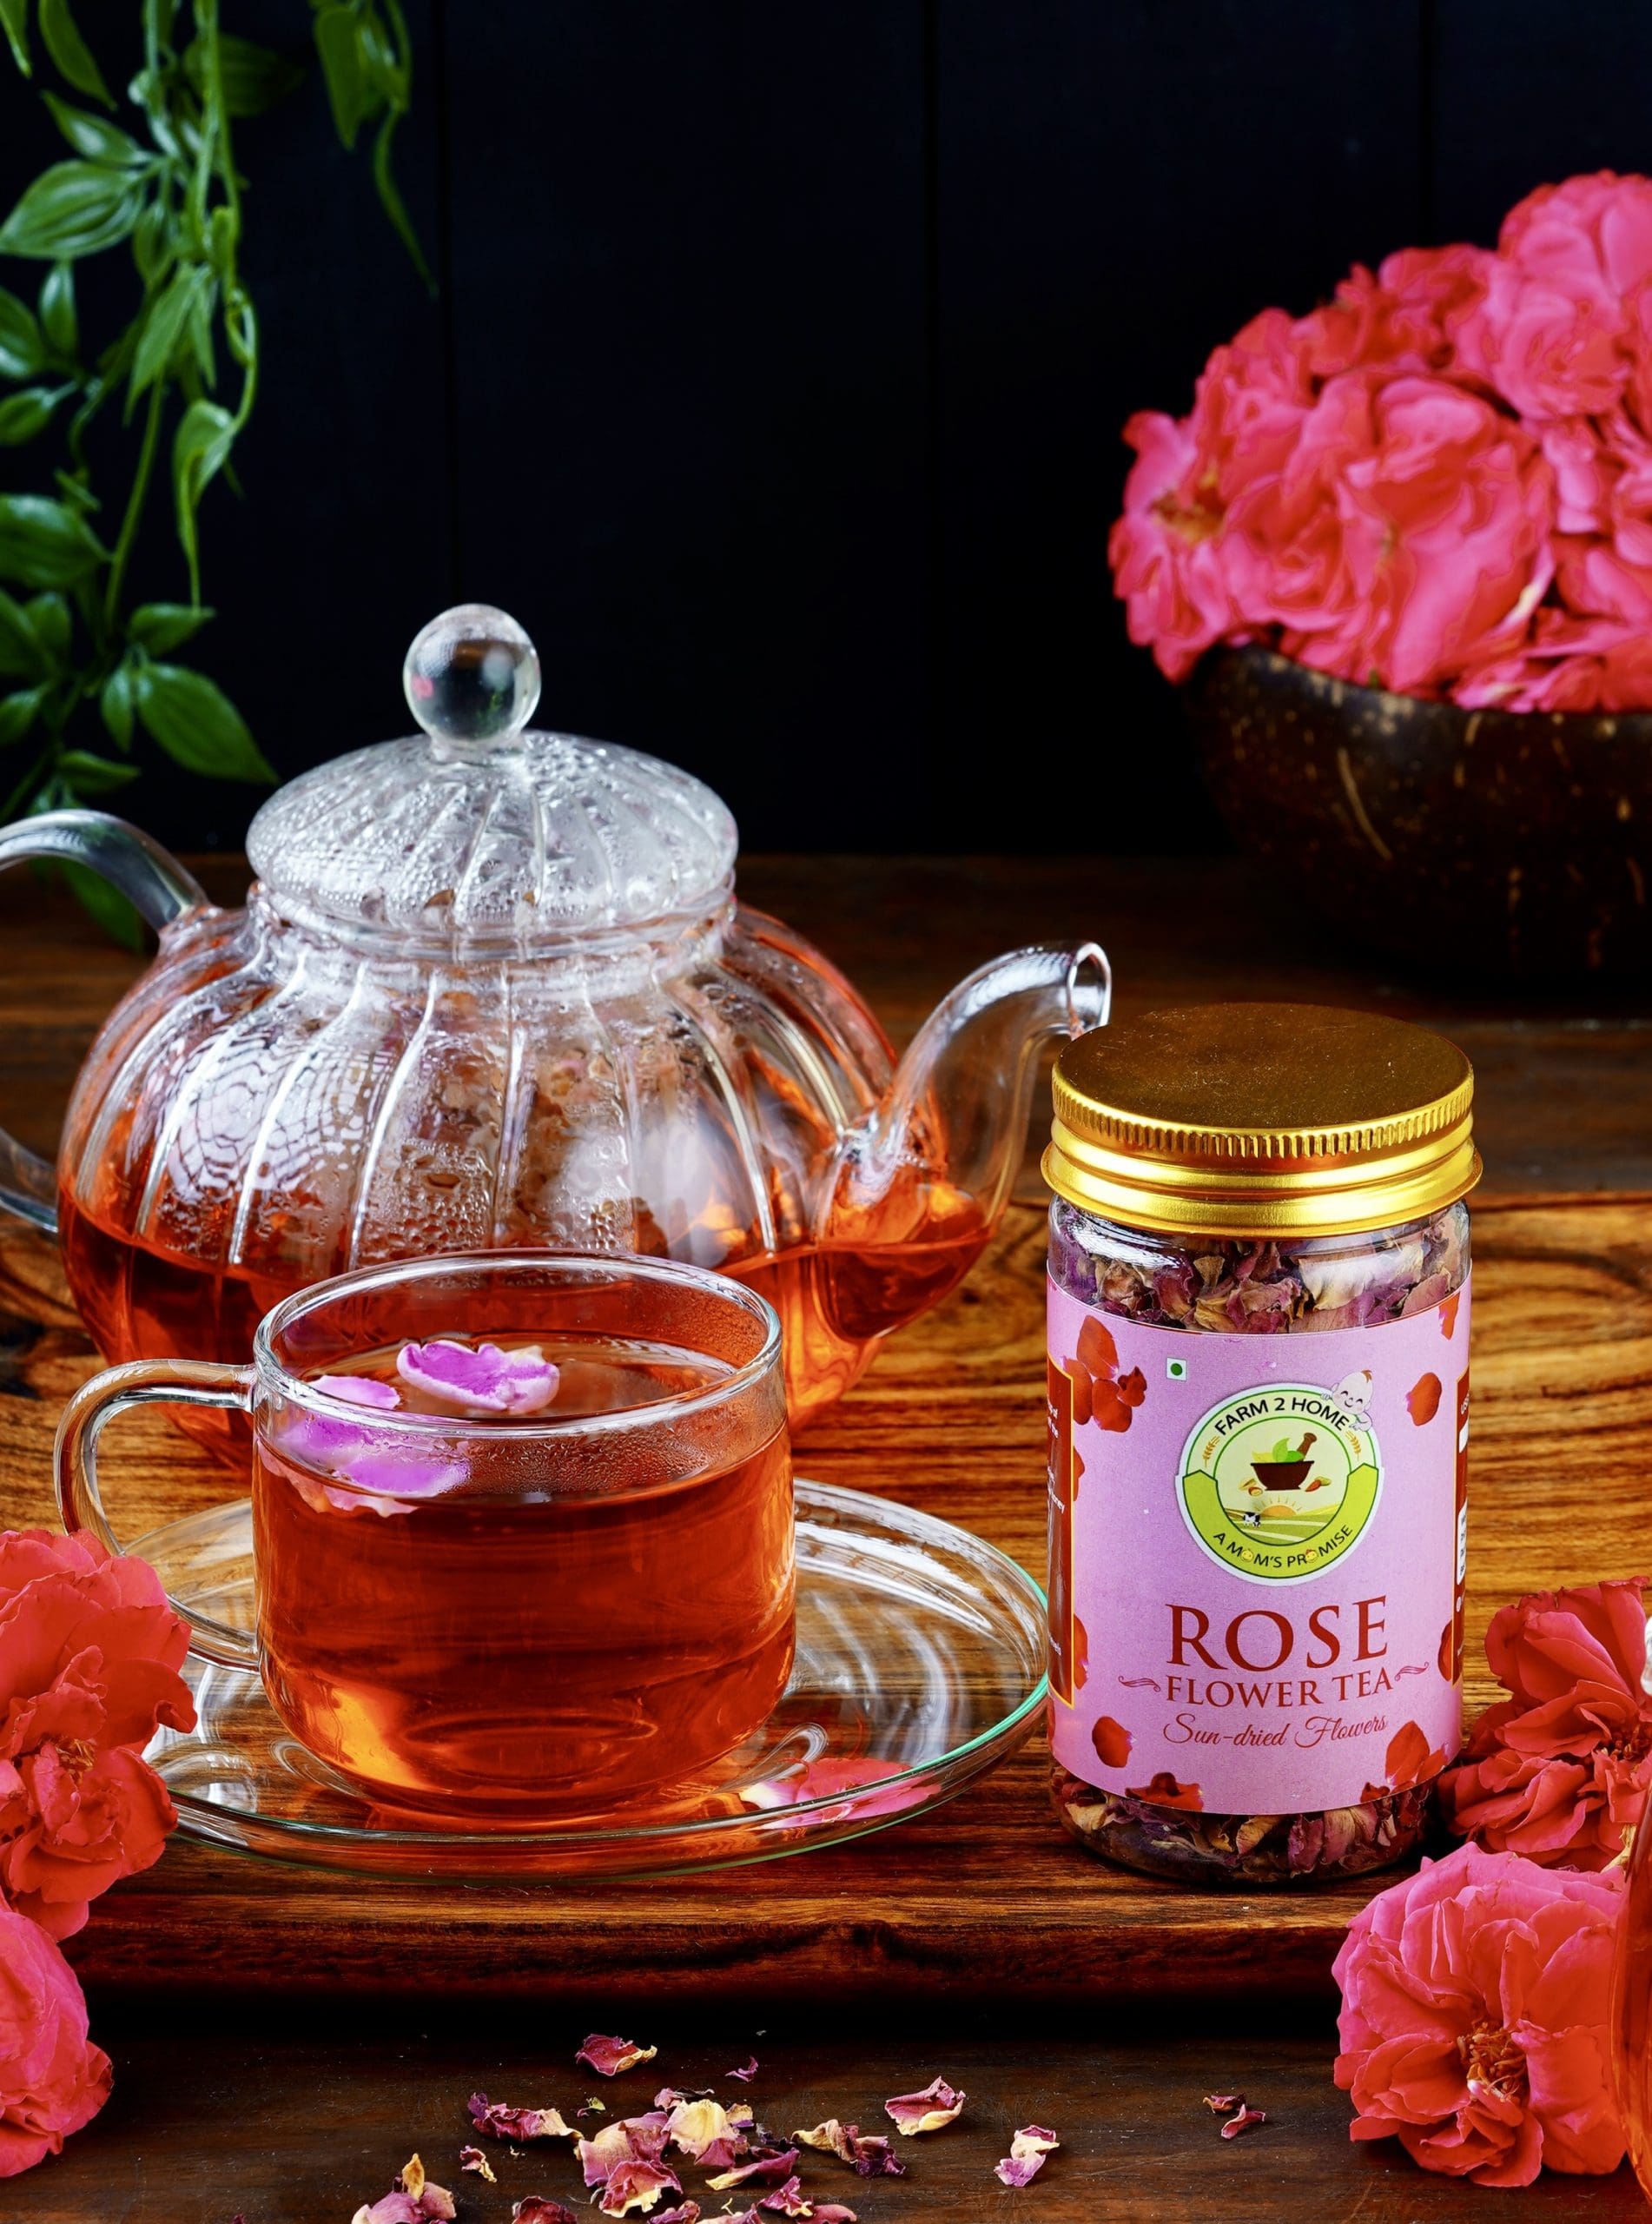 Ruby Rosebud Flower Tea